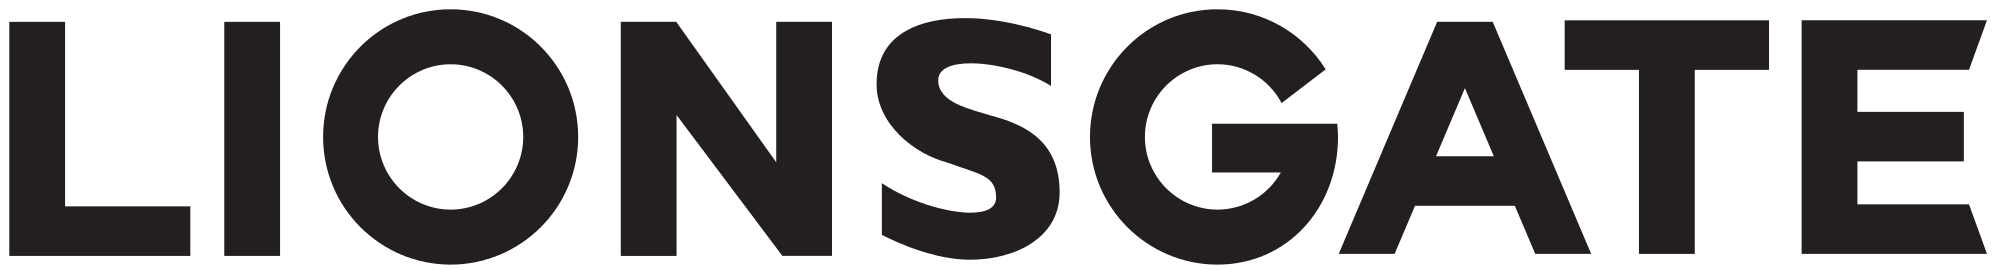 Lions-Gate-Logo.svg.png